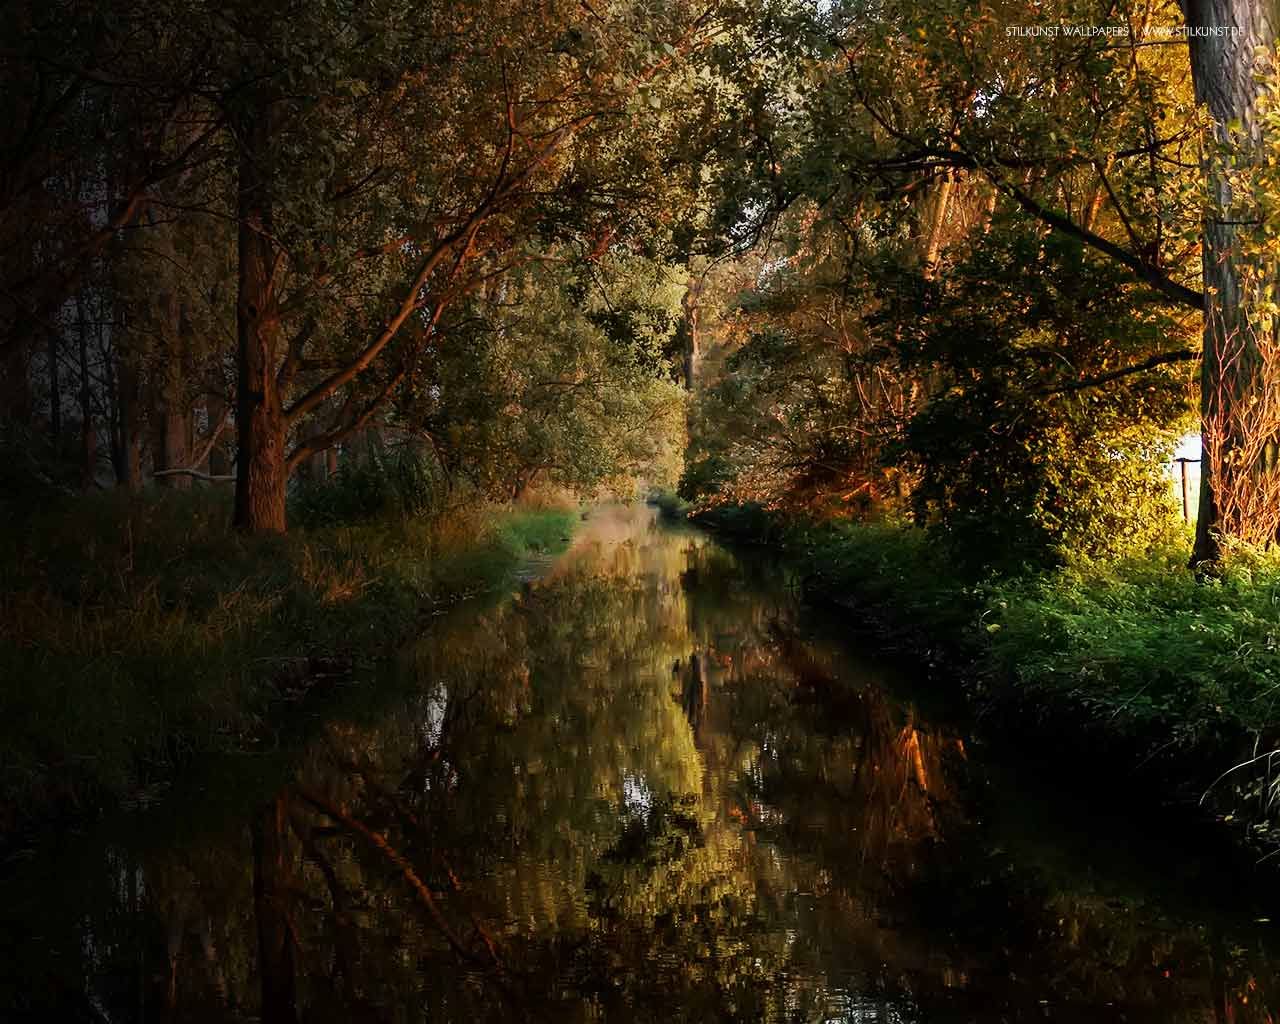 Farben im Herbst | 1280 x 1024px | Bild: ©by Sabrina | Reiner | www.stilkunst.de | Lizenz: CC BY-SA